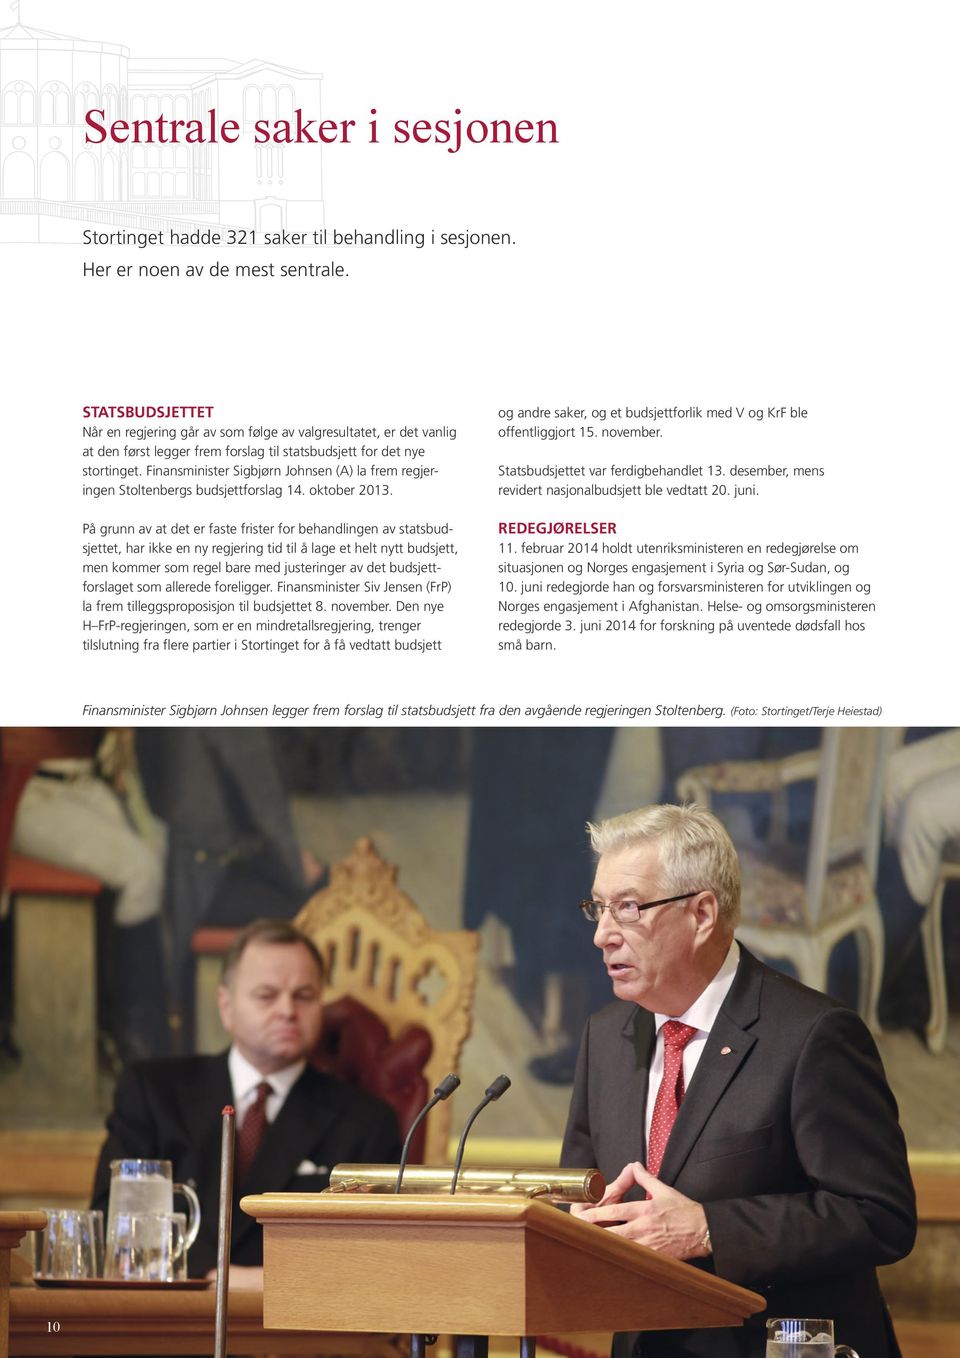 Finansminister Sigbjørn Johnsen (A) la frem regjeringen Stoltenbergs budsjettforslag 14. oktober 2013.